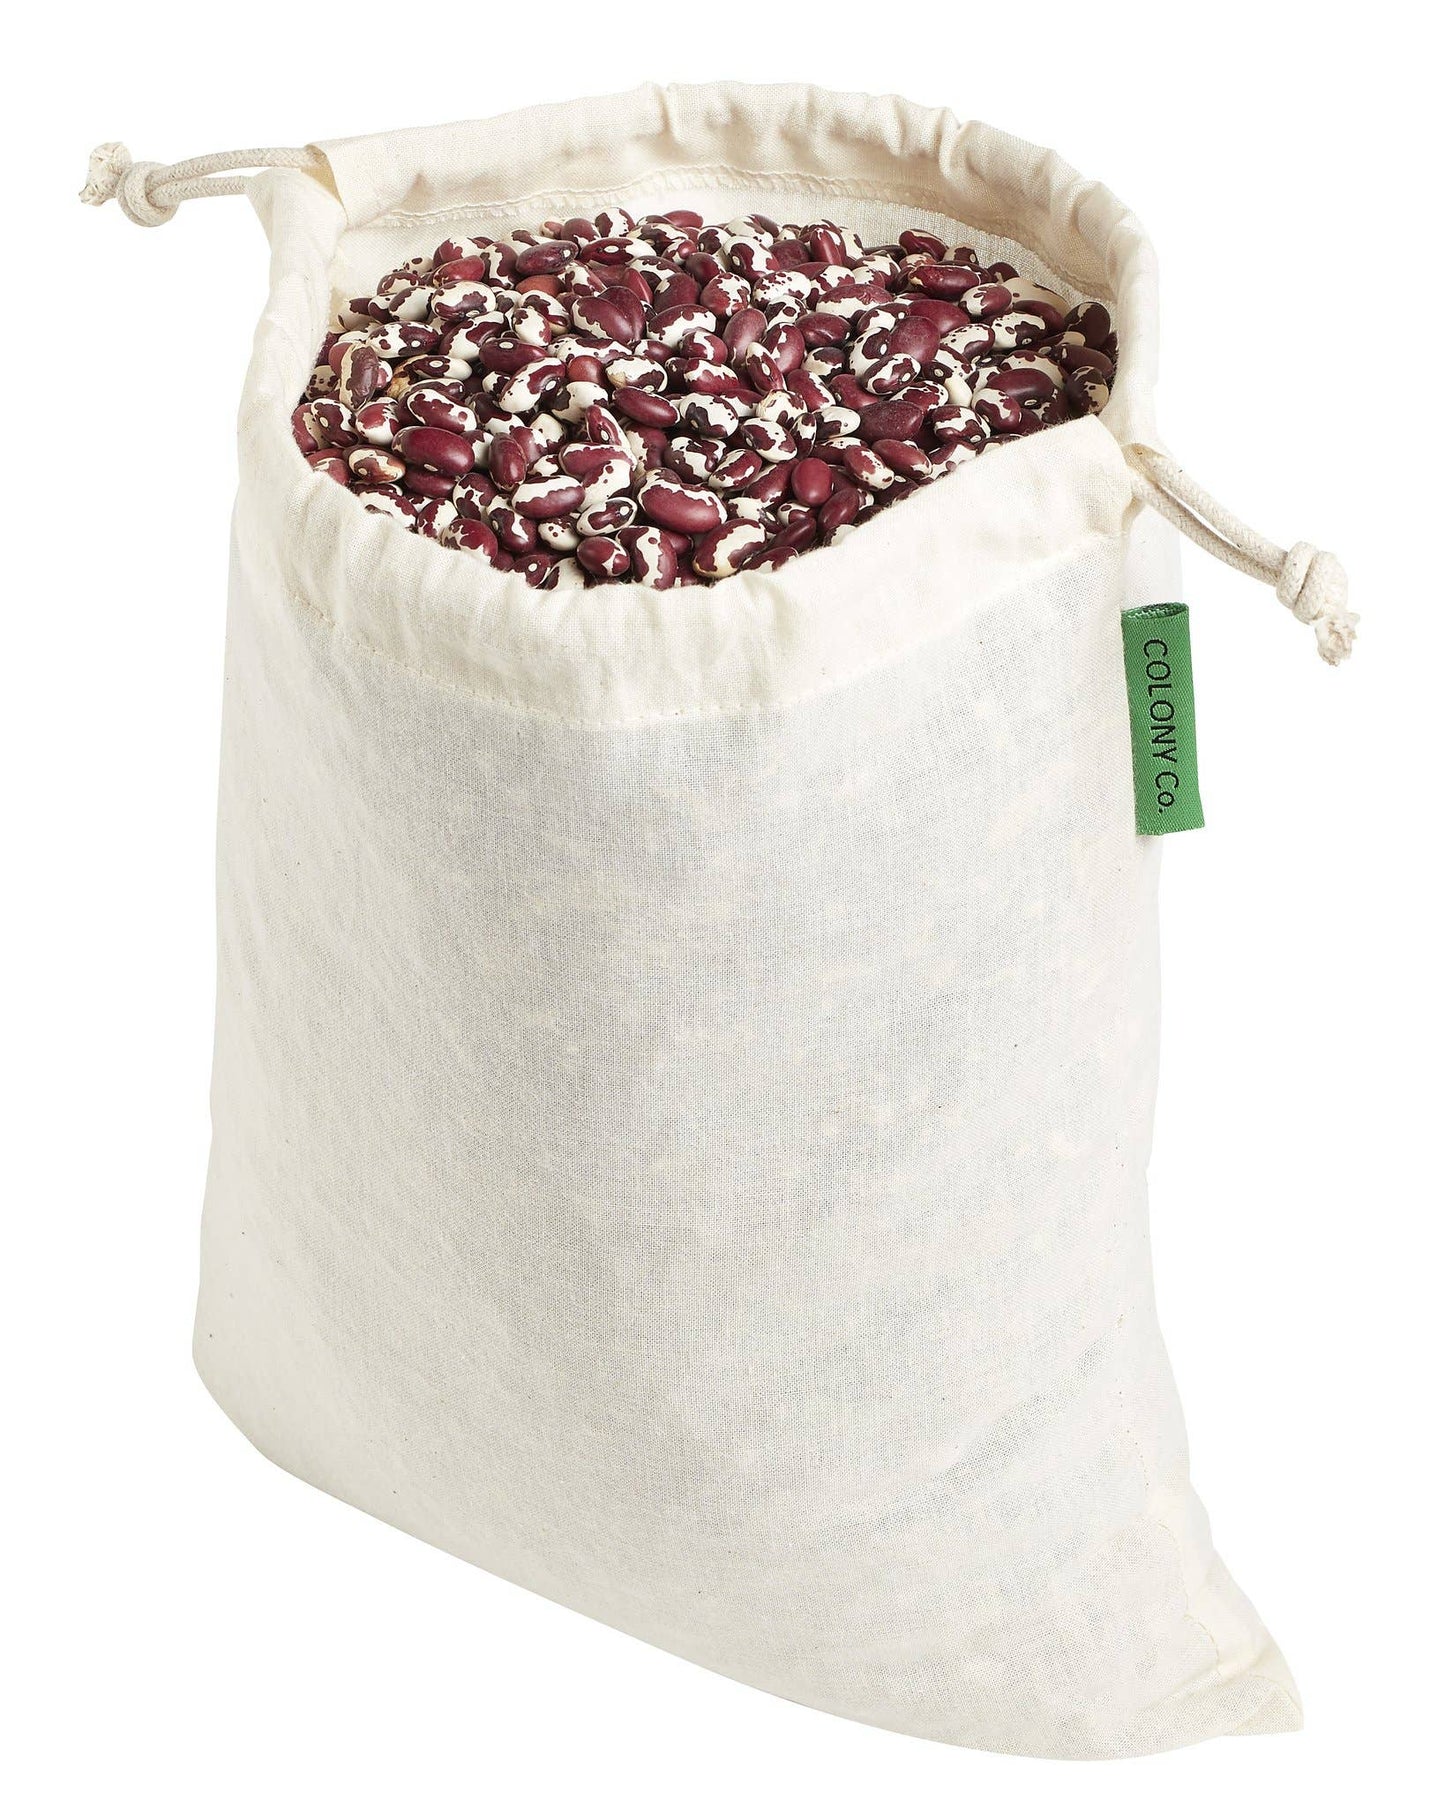 Organic Bulk Food Bag